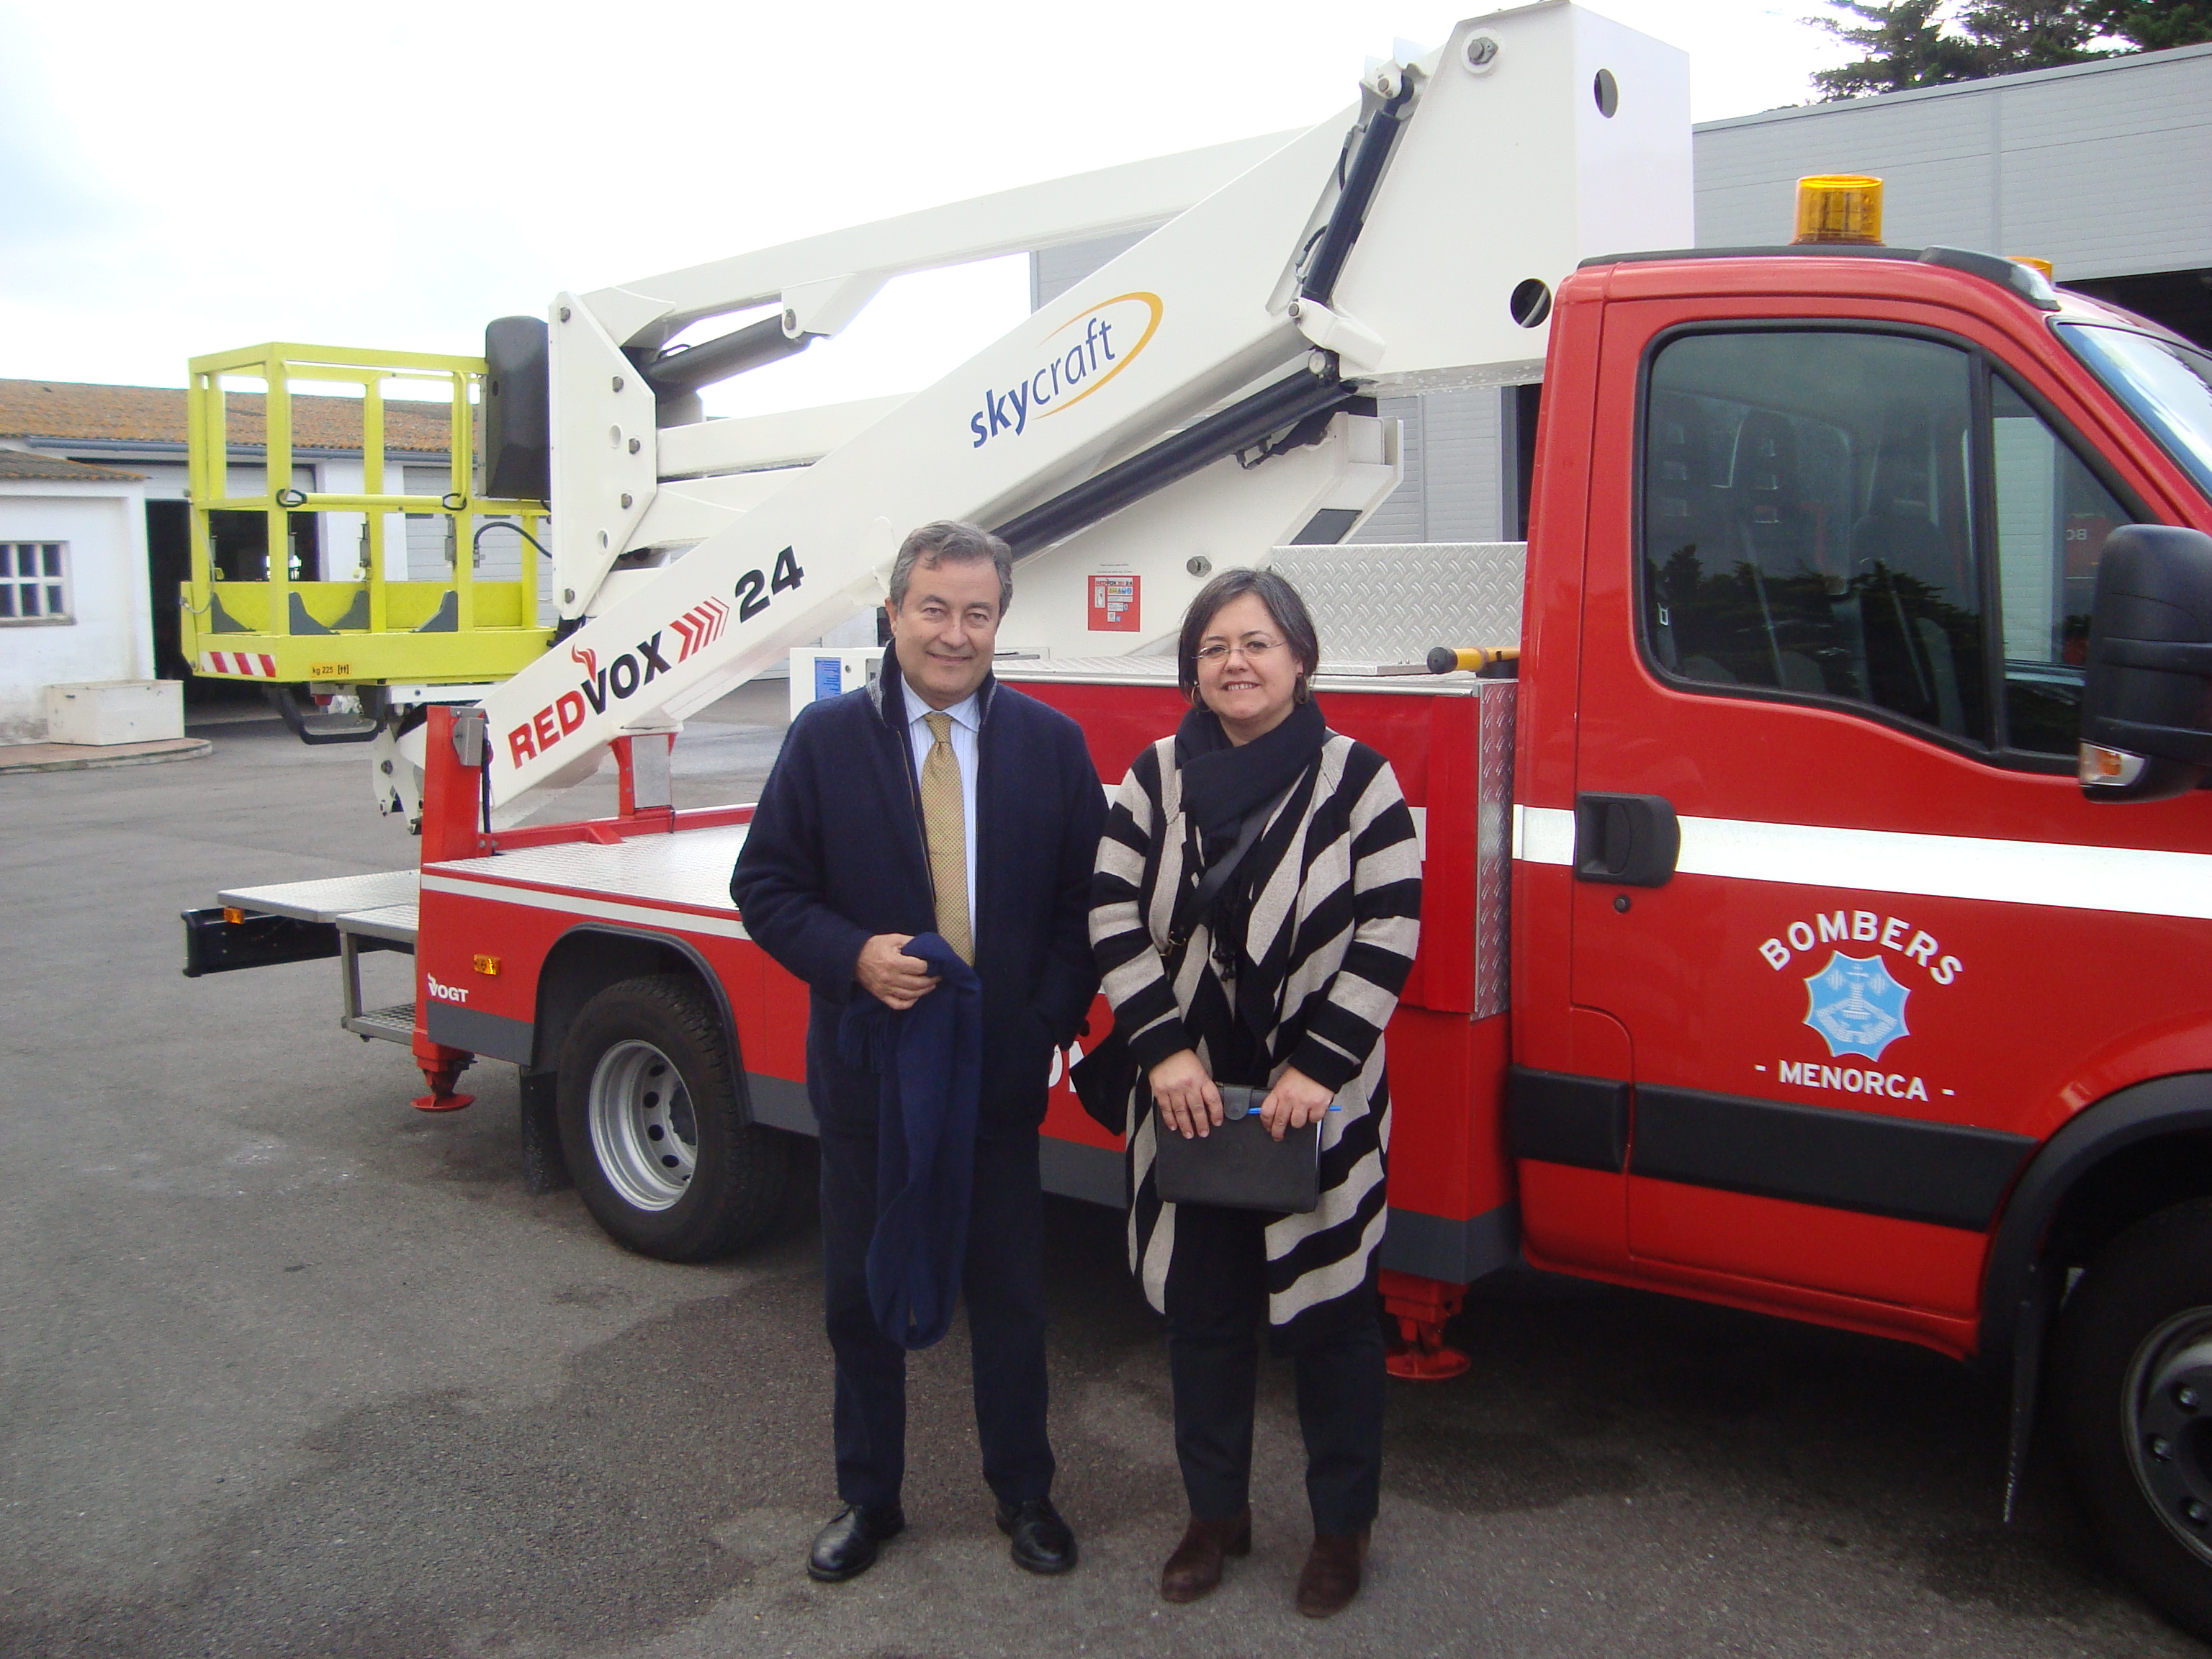 L’APB lliura al Consell de Menorca un camió de bombers per poder actuar al port de Maó